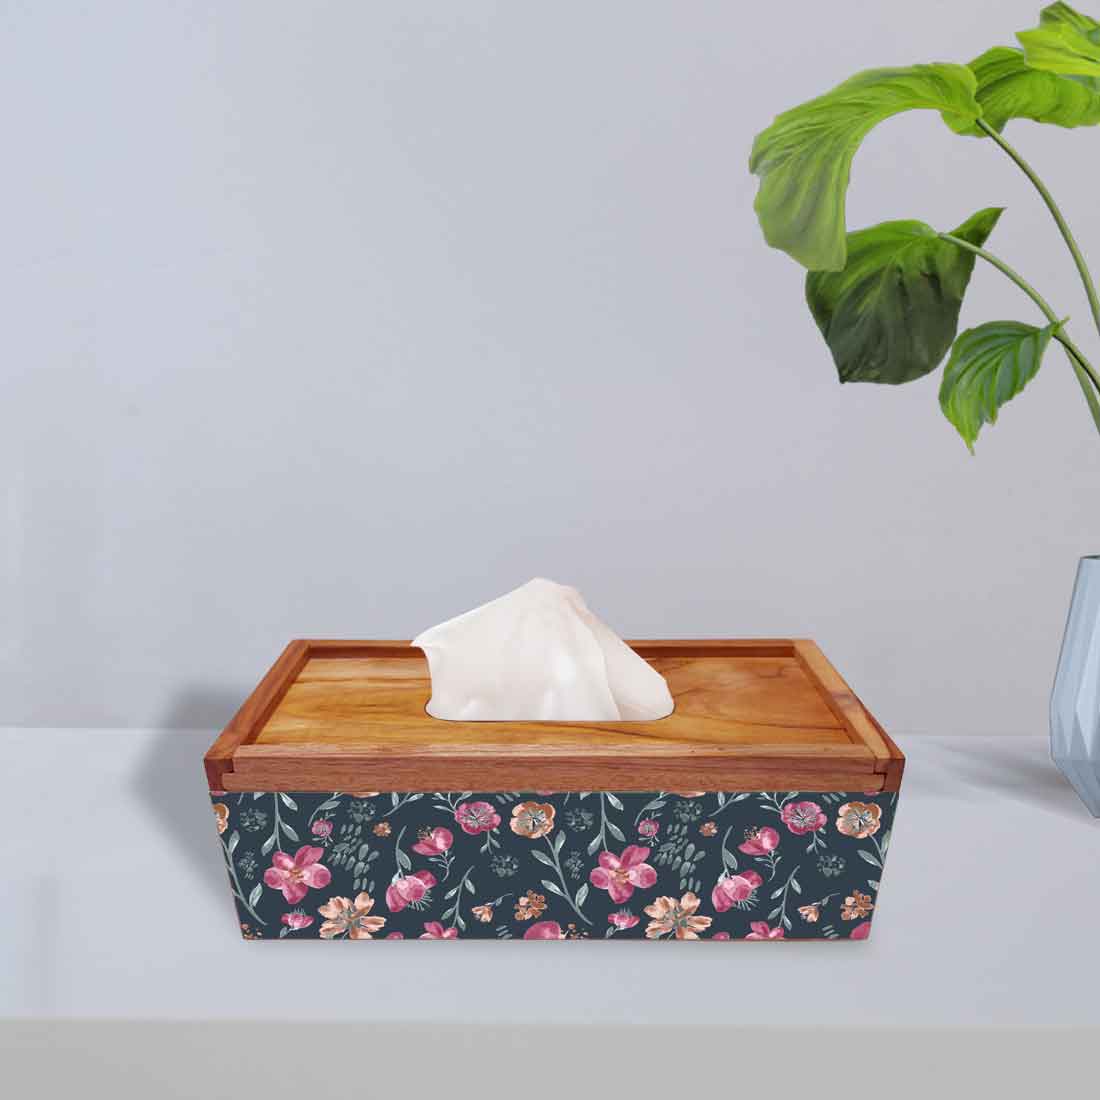 Wooden Rectangular Tissue Holder for Bathroom - Flowers